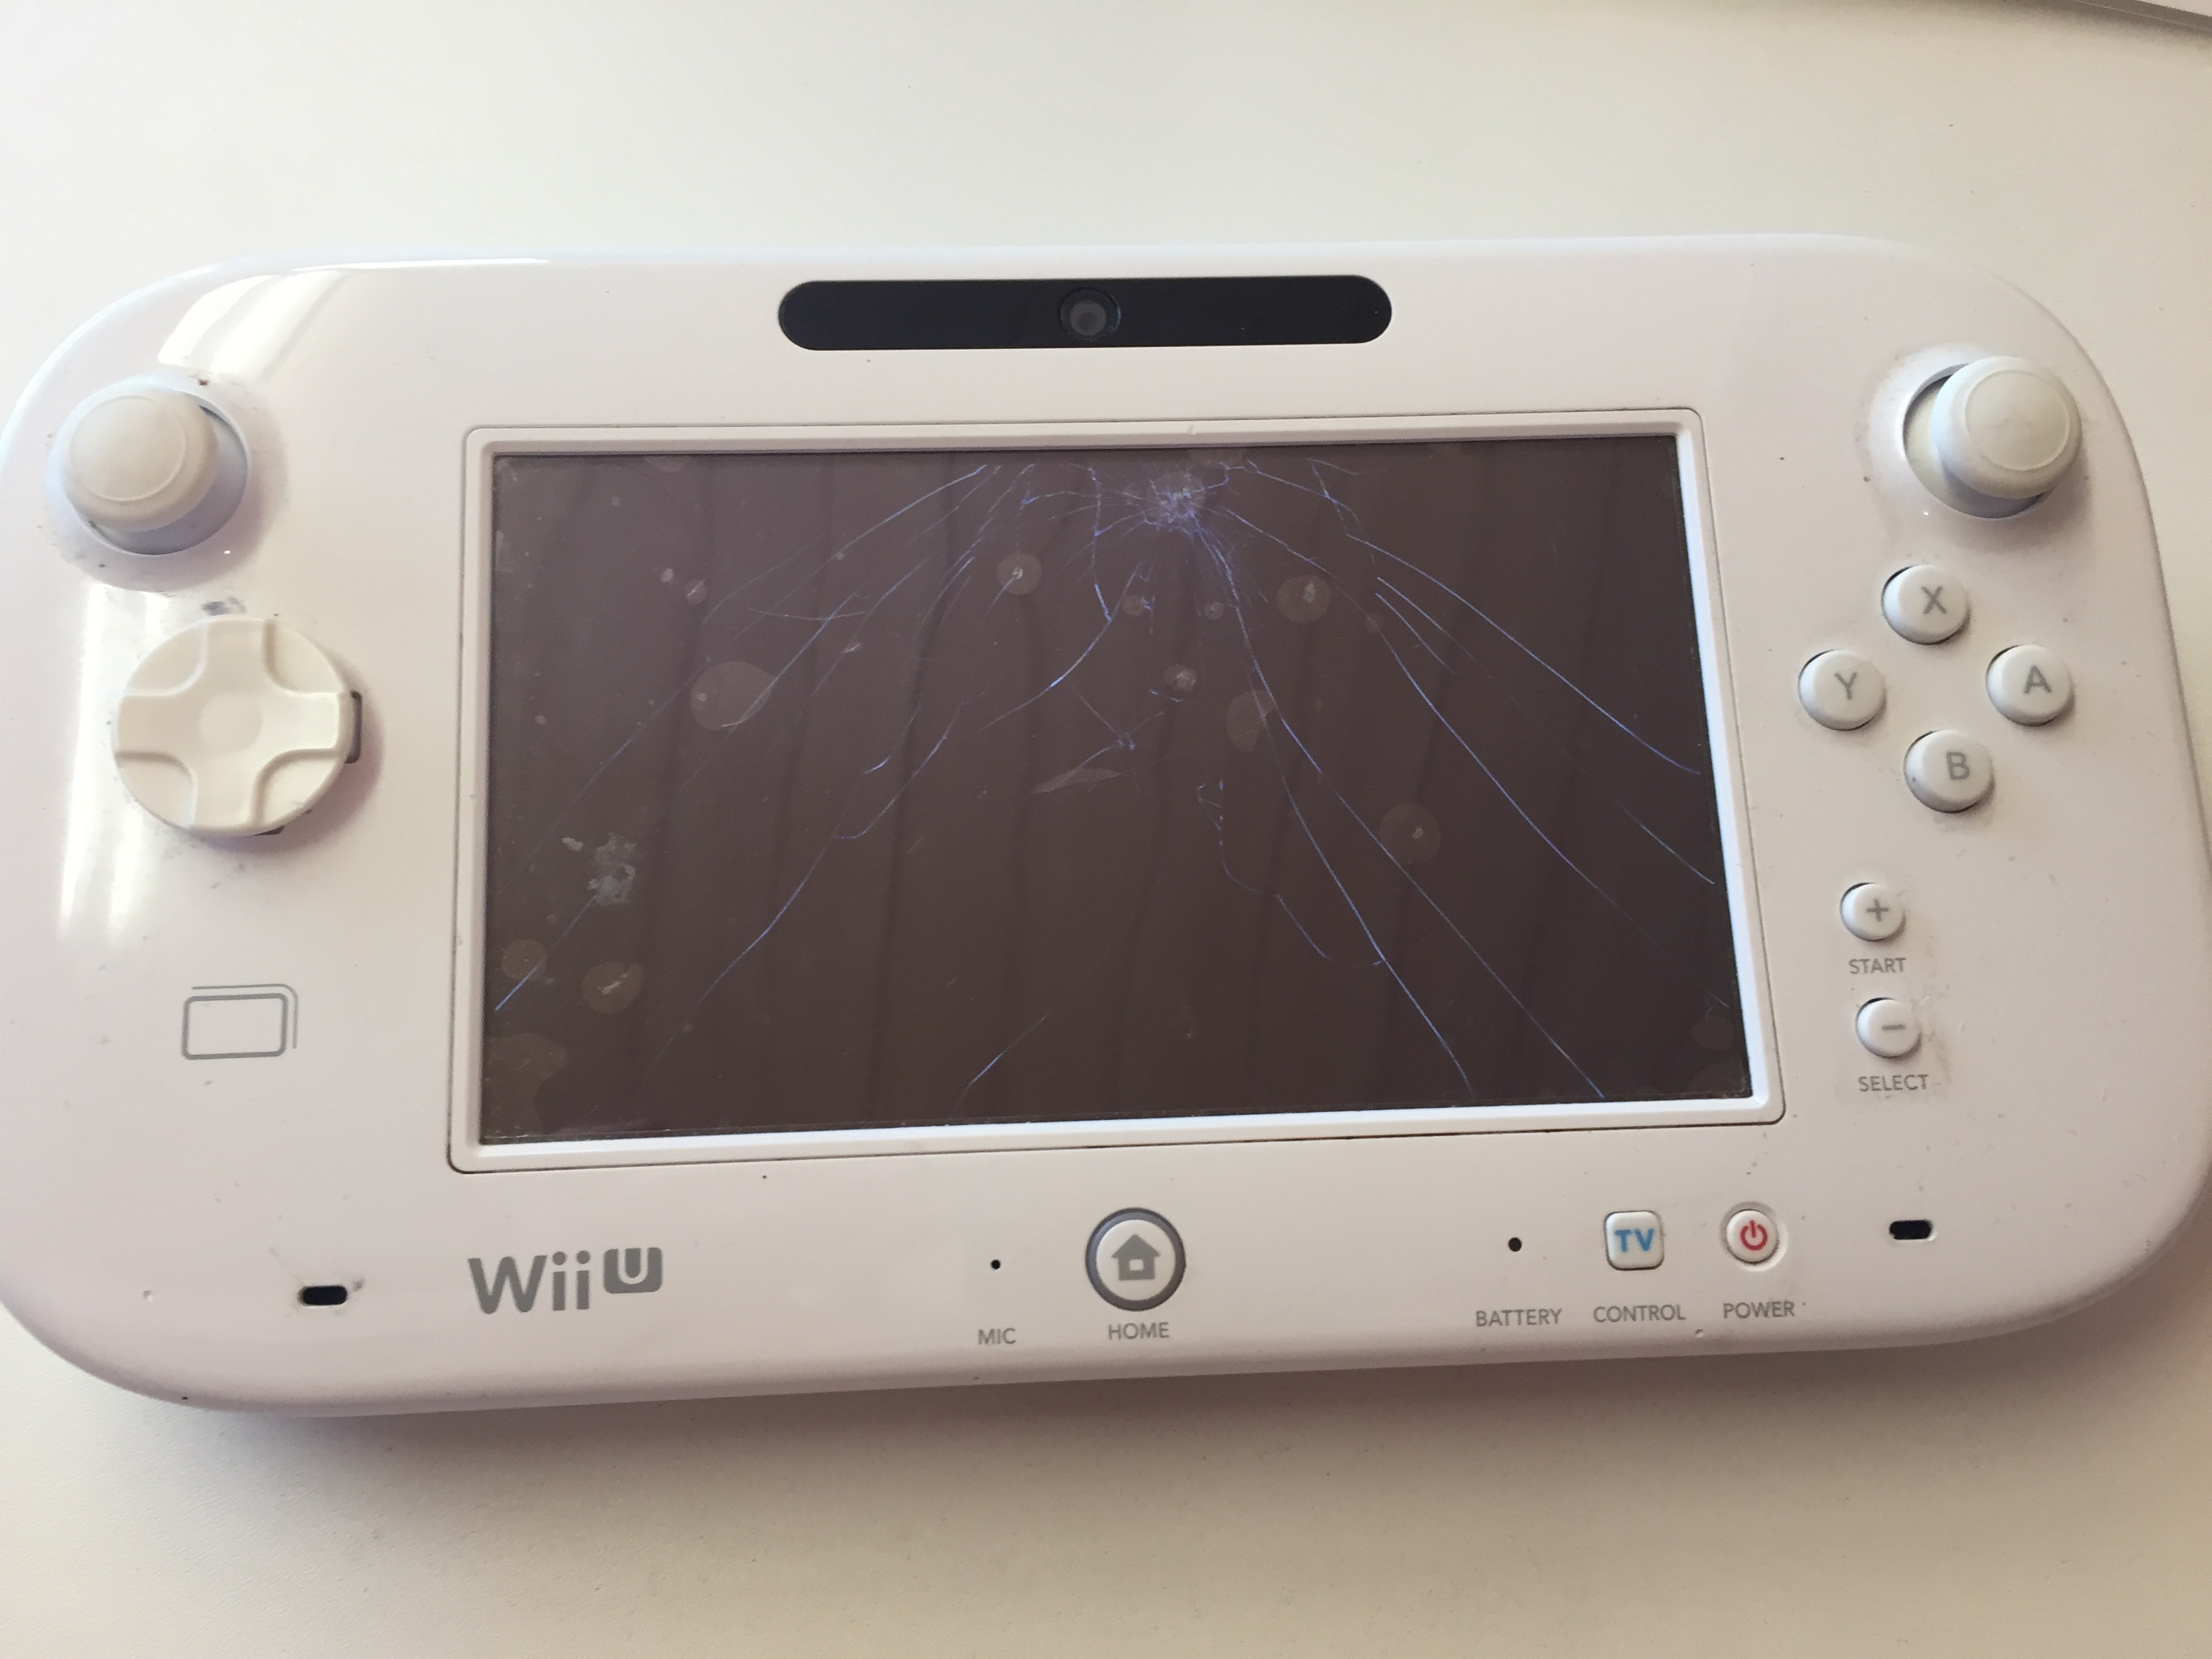 Wii U ゲームパッド